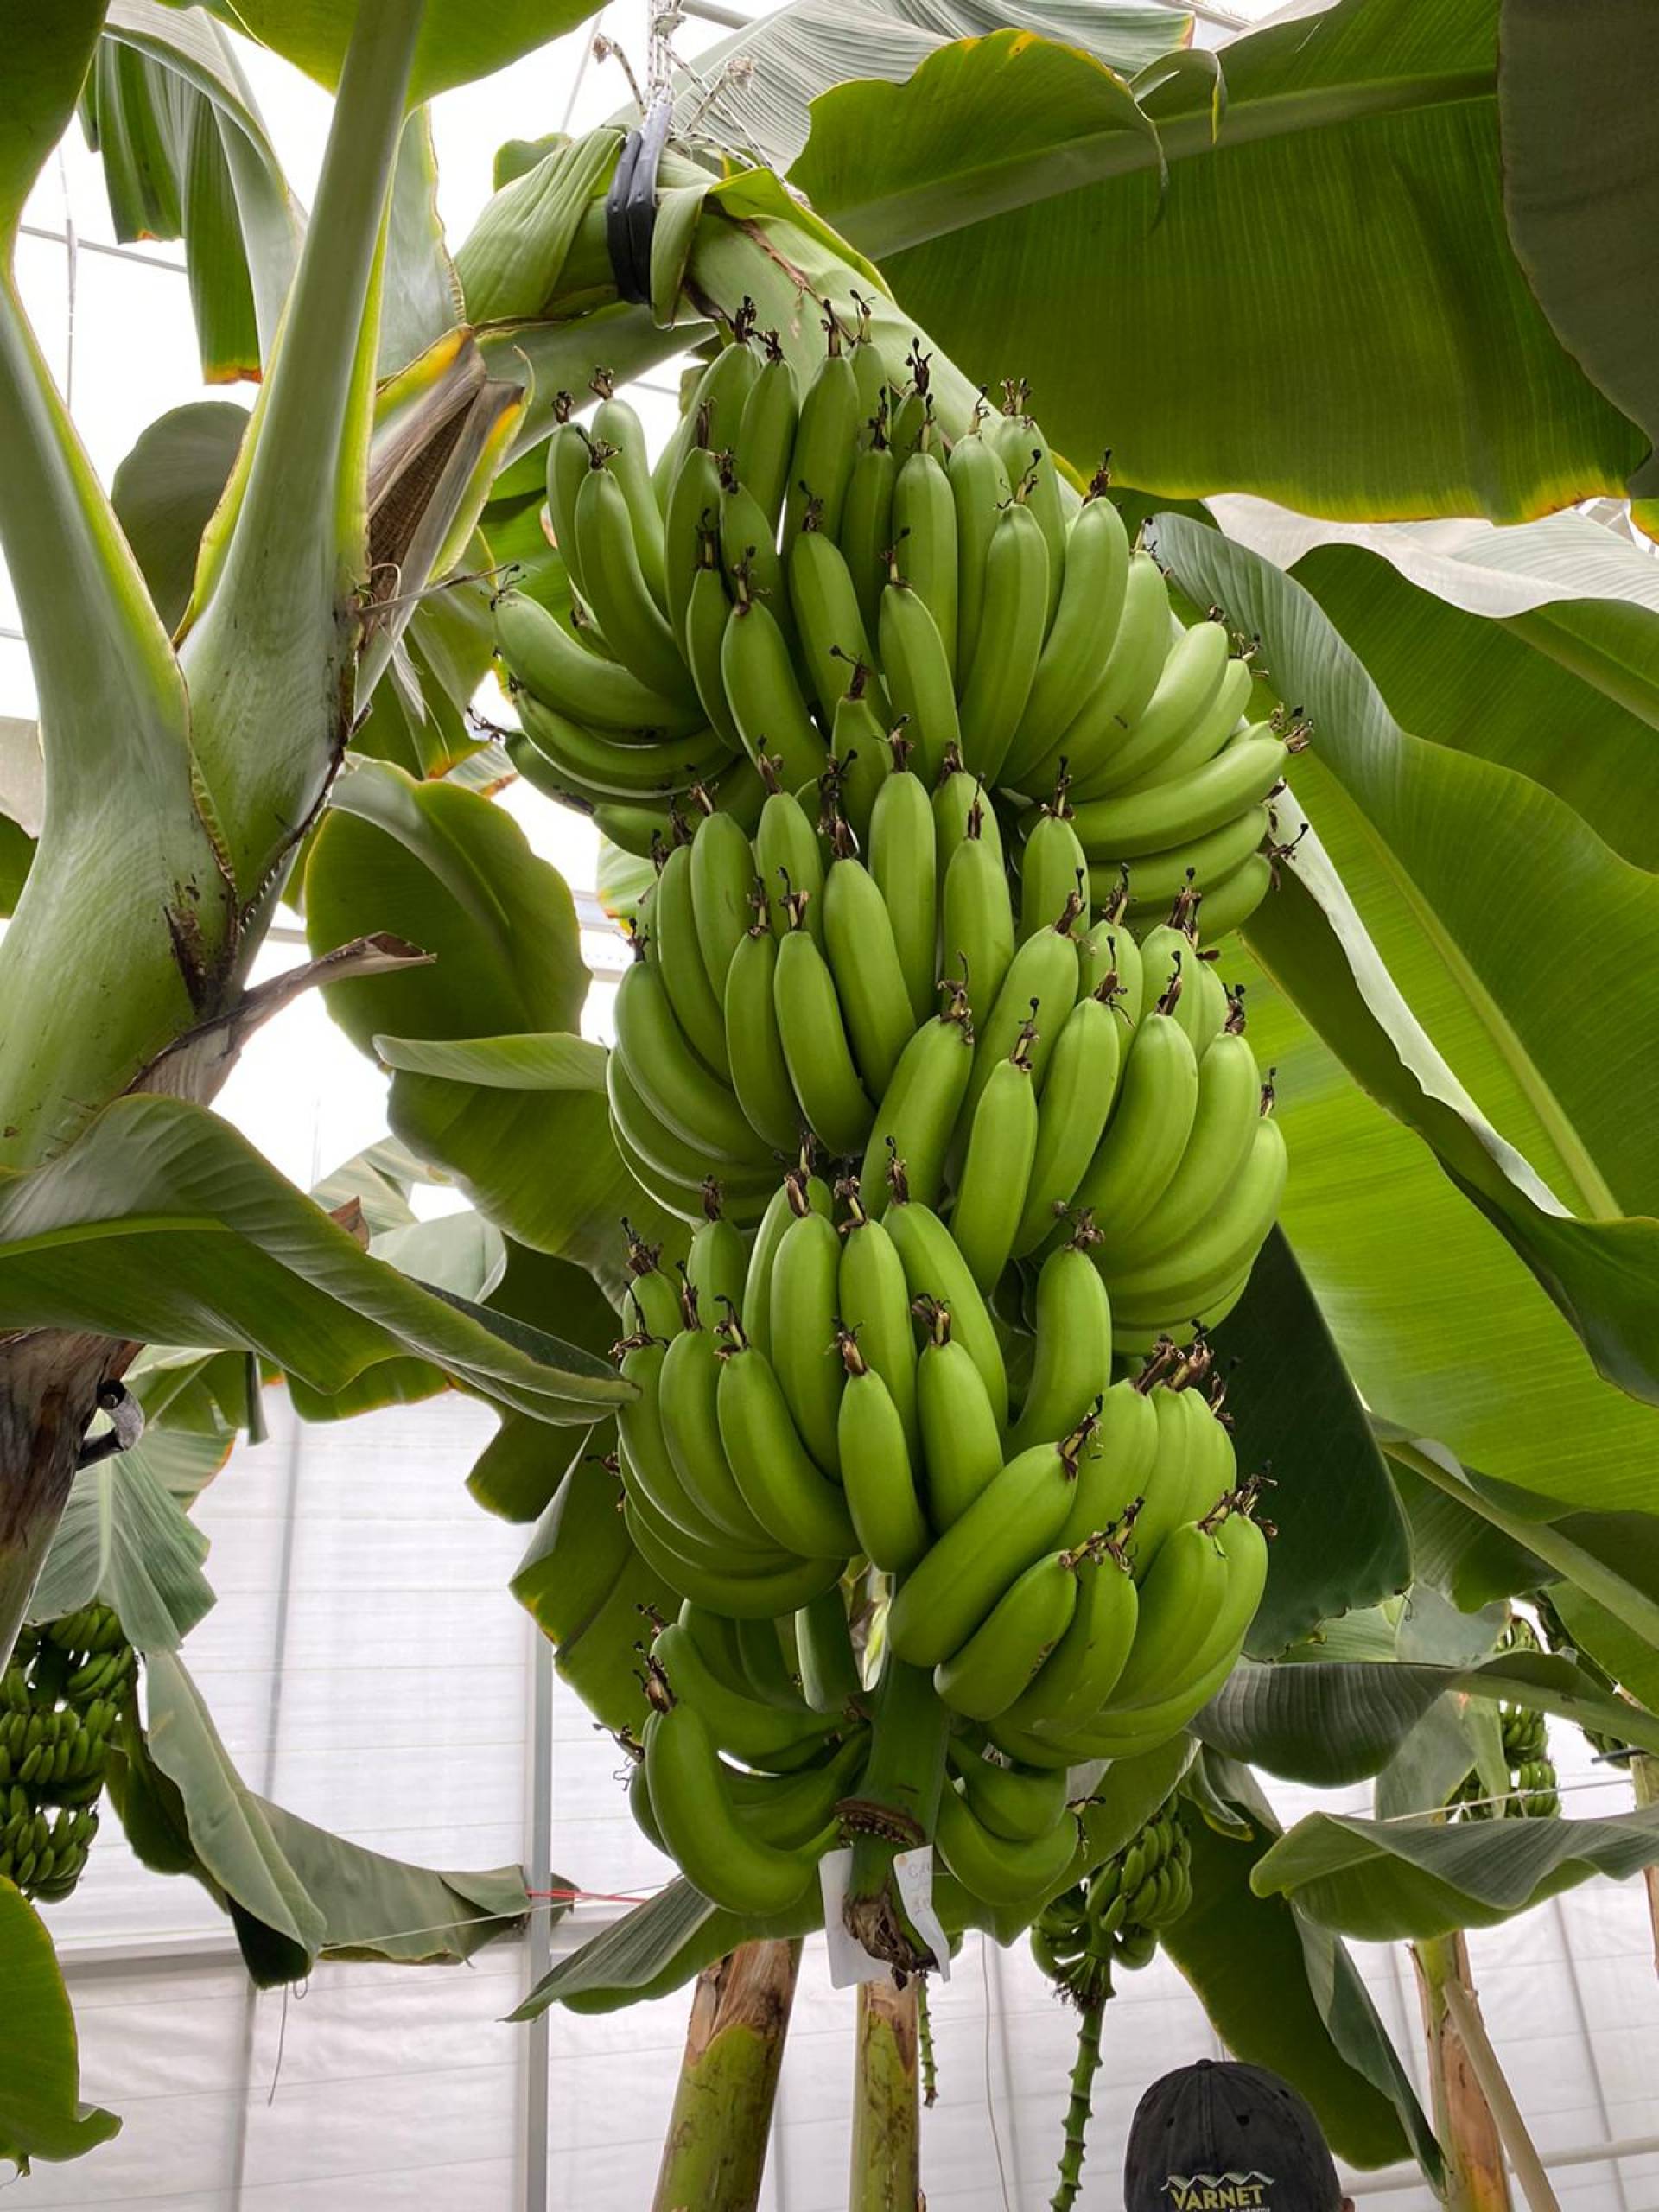 Мы успешно завершили наш проект по выращиванию бананов с использованием техники гидропонного выращивания в горшках.